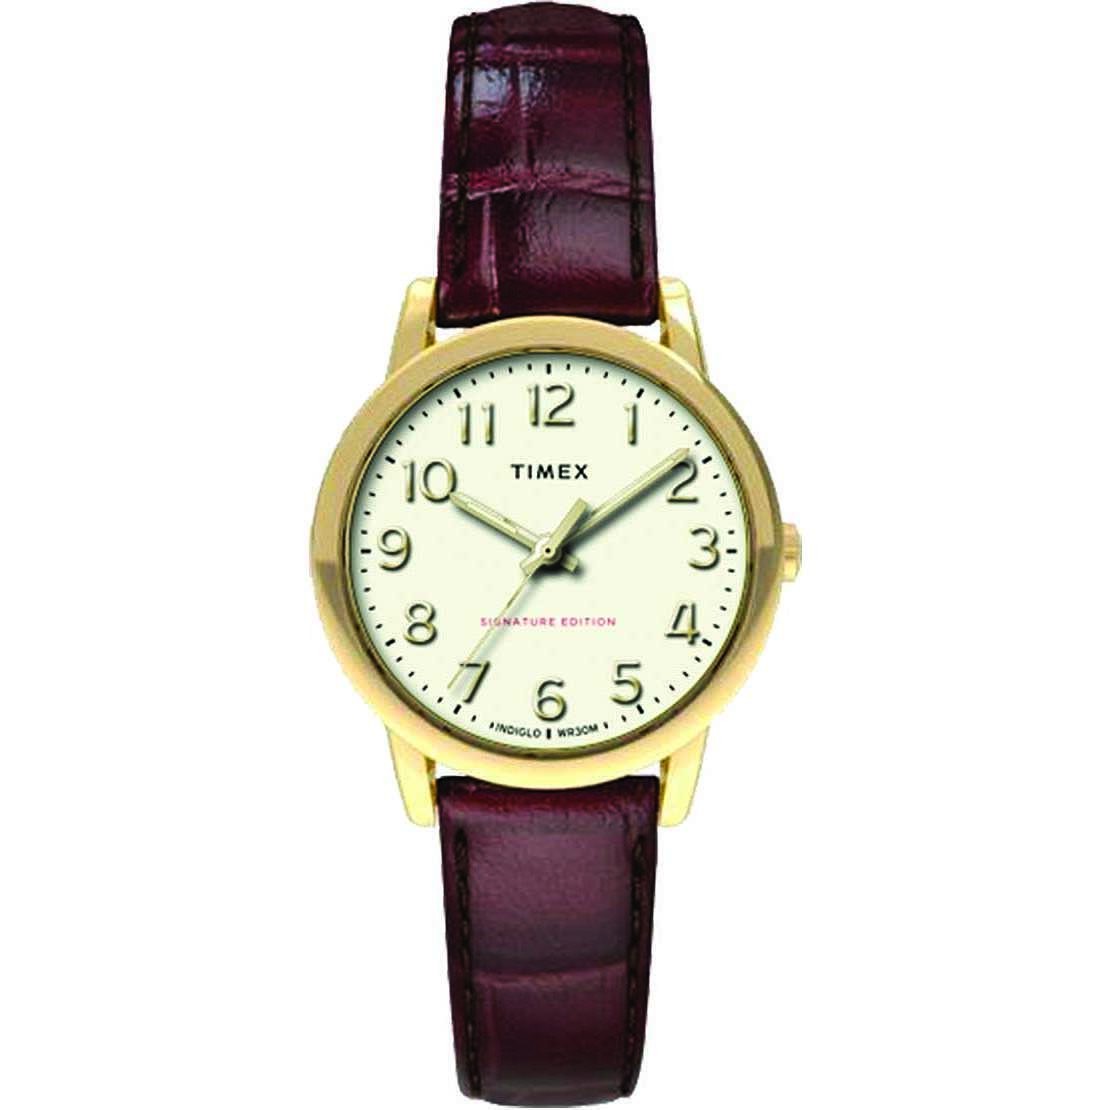 TIMEX: Orologio donna solo tempo della collezione EASY READER con cinturino in pelle, TW2R65400